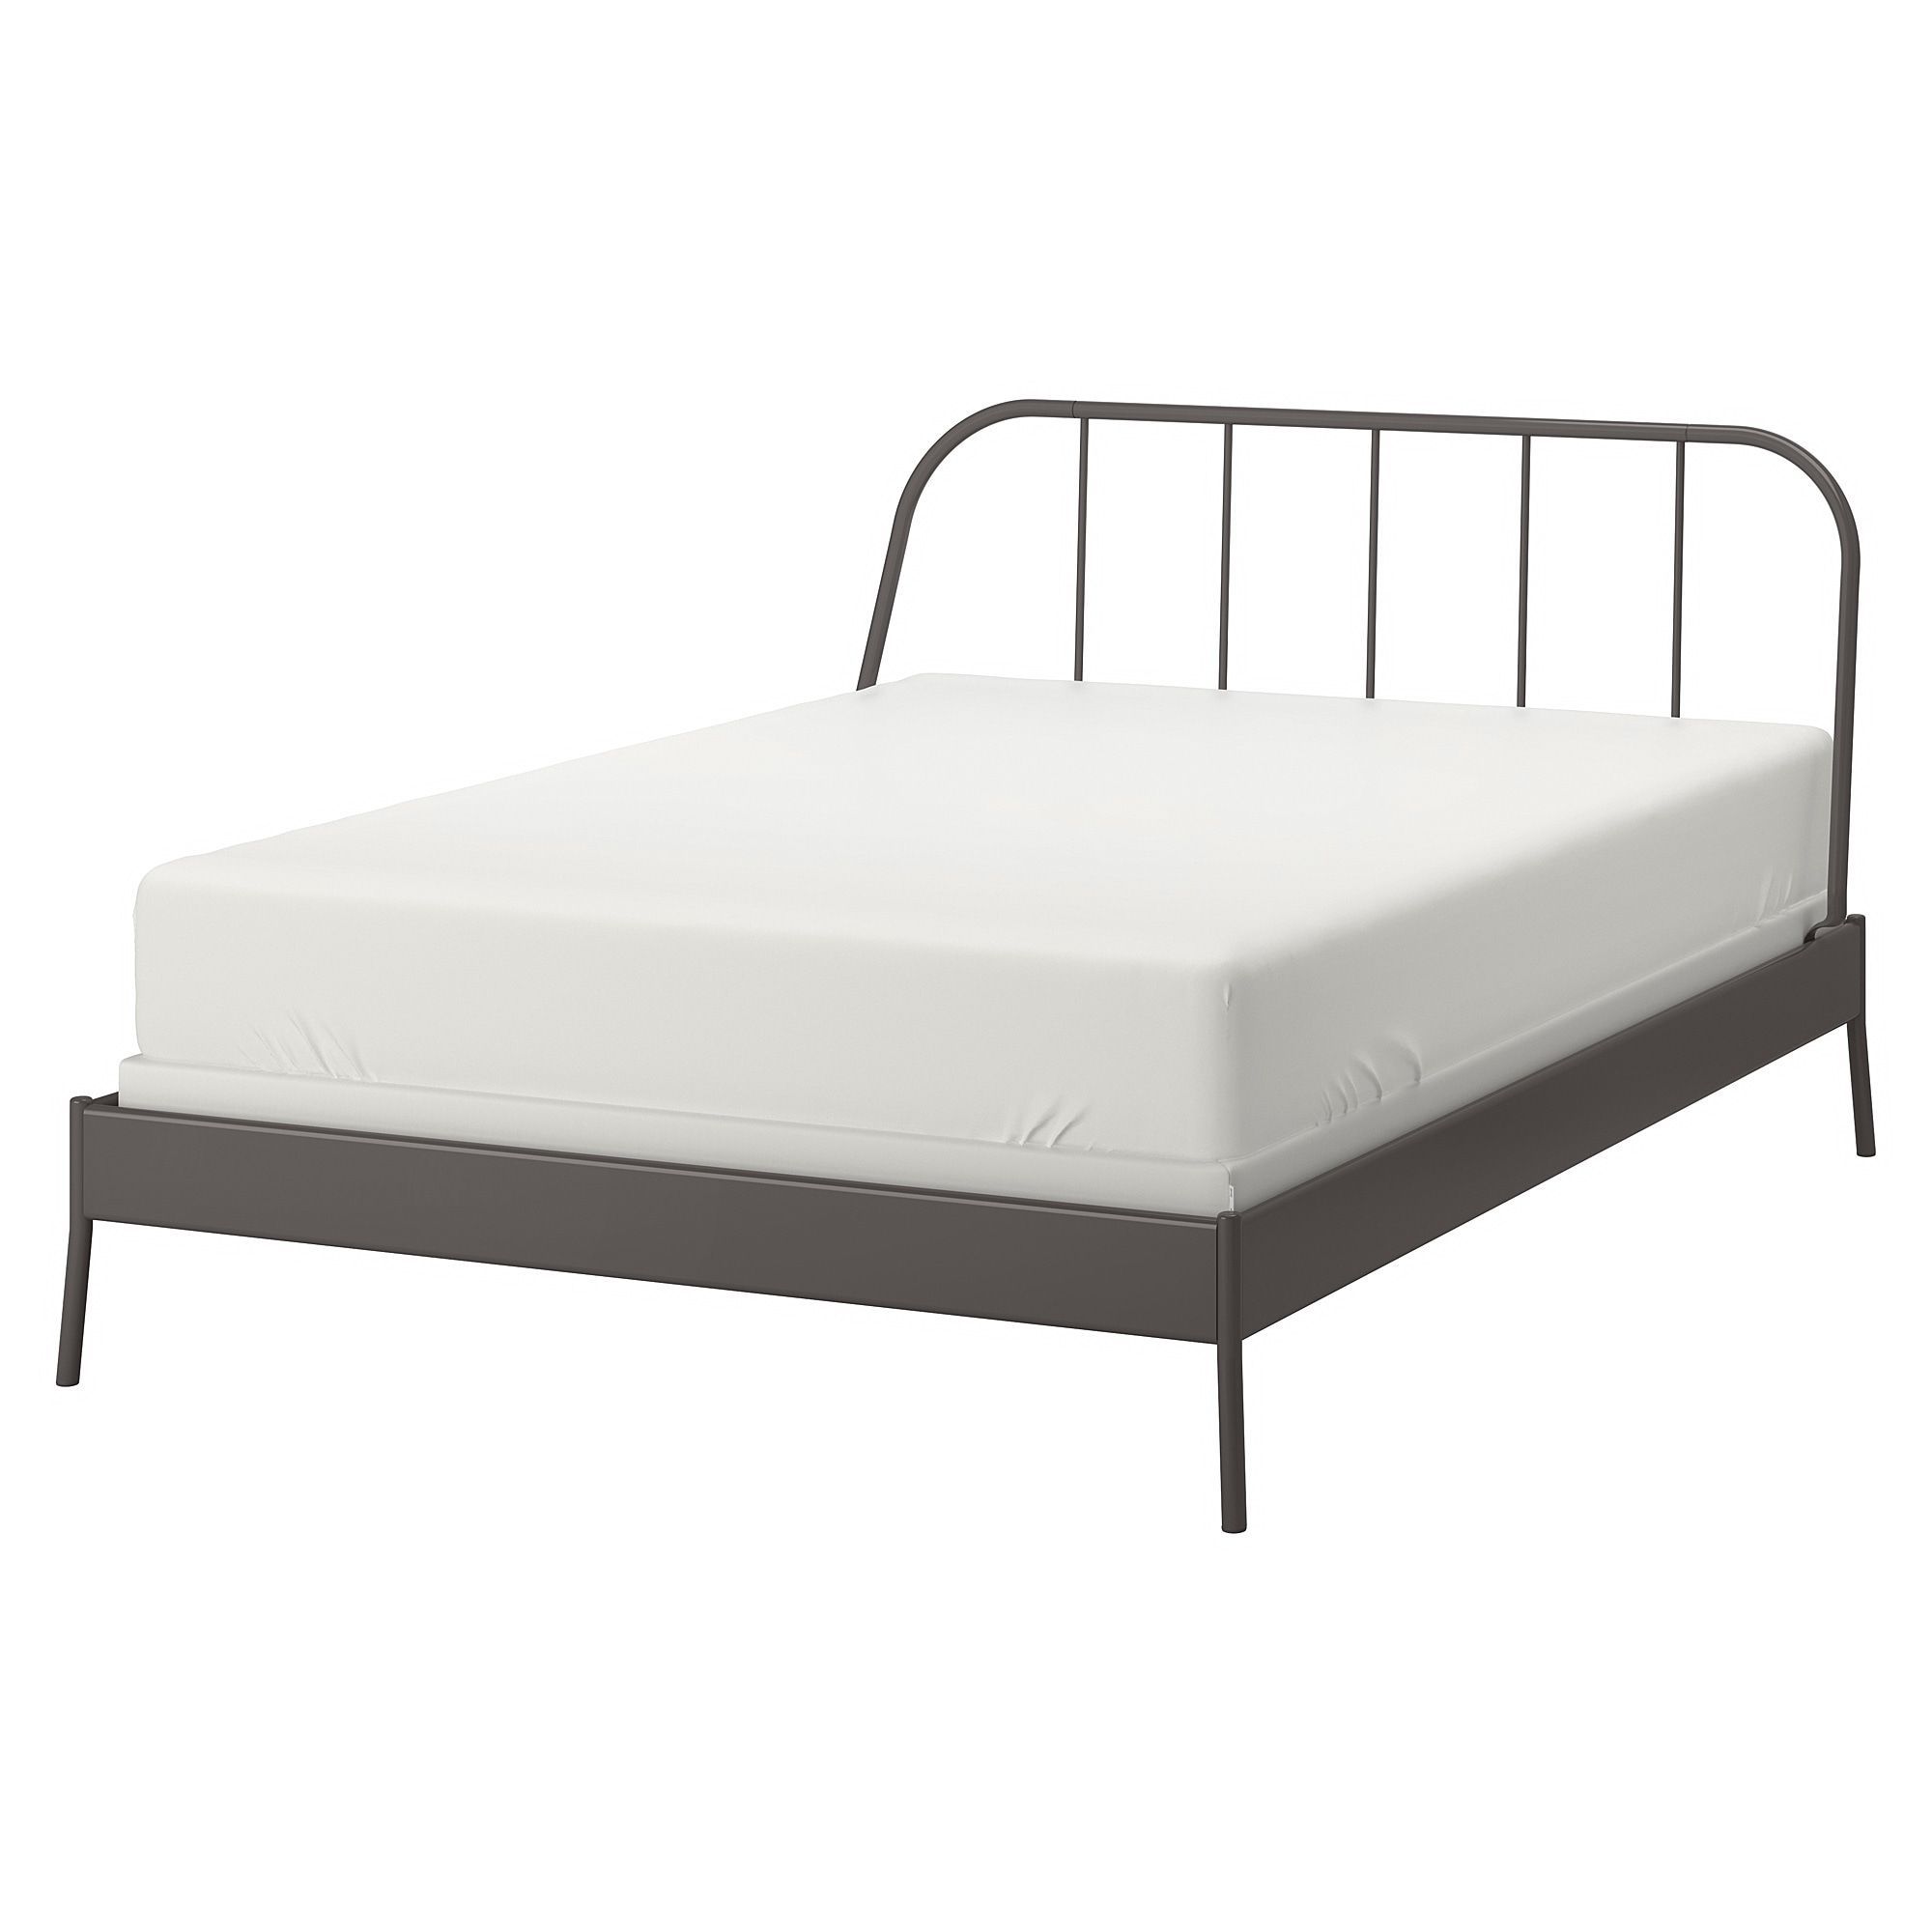 KOPARDAL Bed frame, gray, Eidfjord, Queen - IKEA - KOPARDAL Bed frame, gray, Eidfjord, Queen - IKEA -   15 diy Bed Frame steel ideas